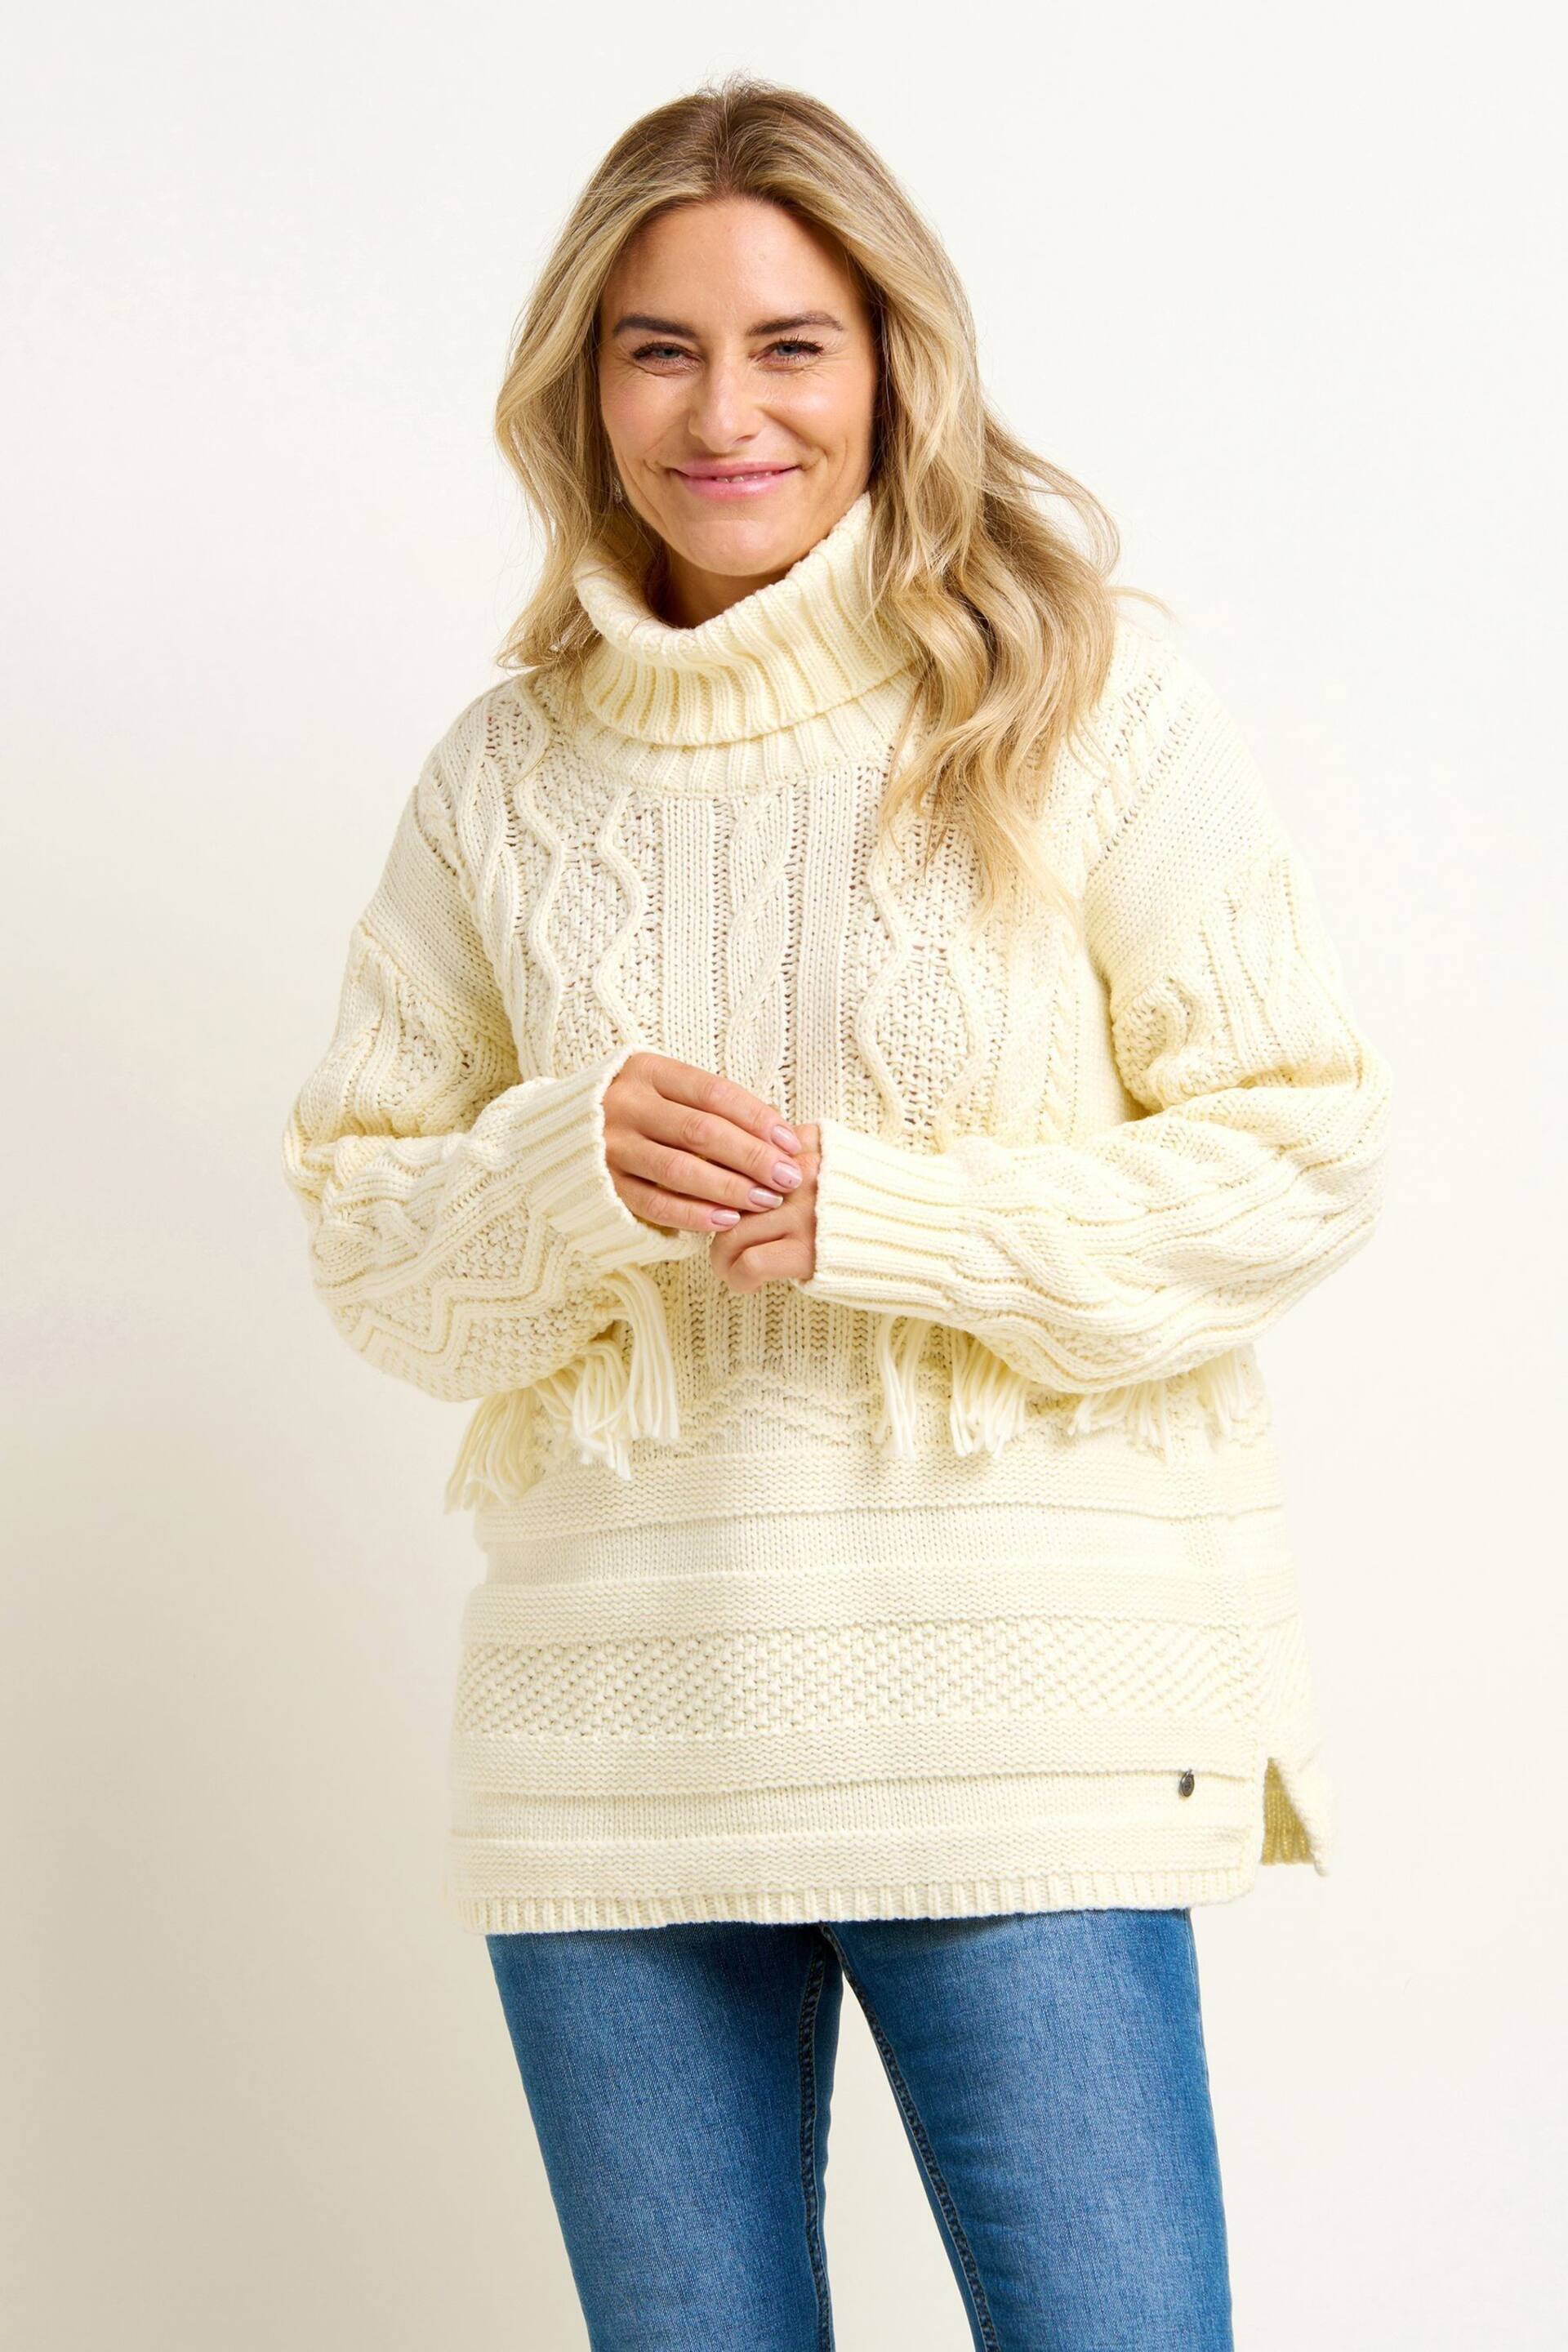 Brakeburn Cream Alba Tassel Knitted Jumper - Image 1 of 4